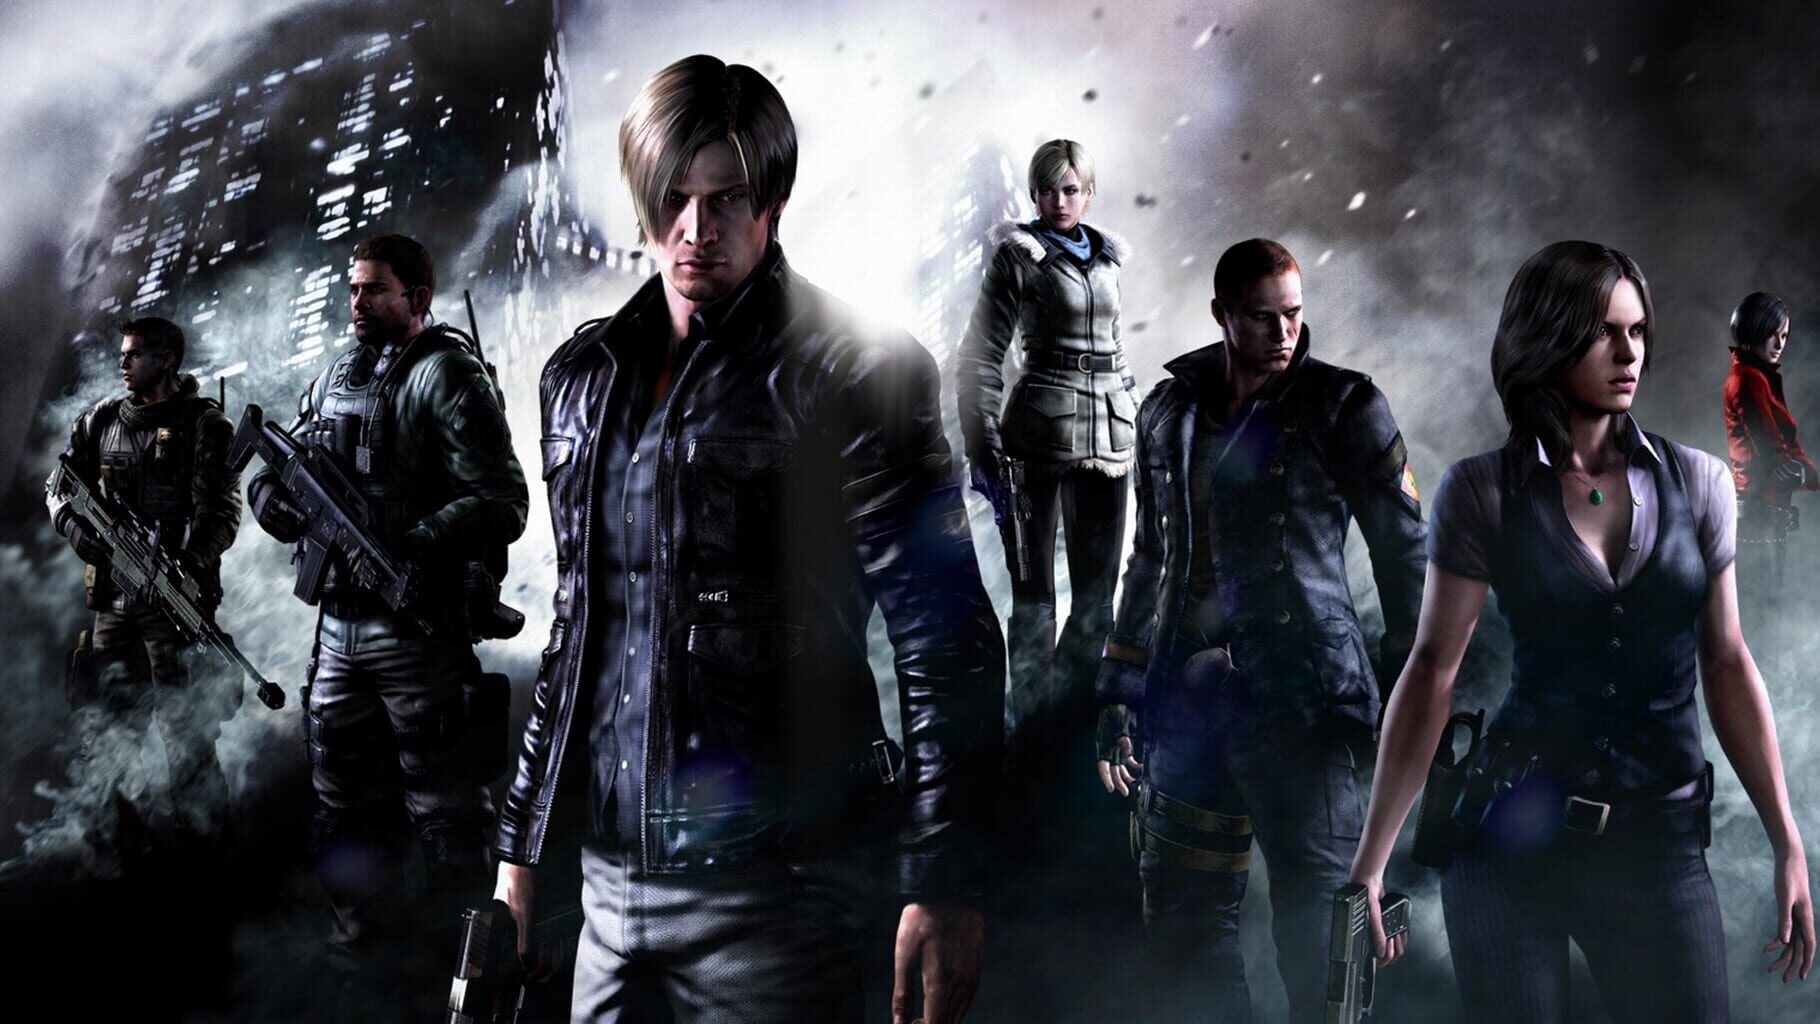 Resident Evil 6 Remastered artwork